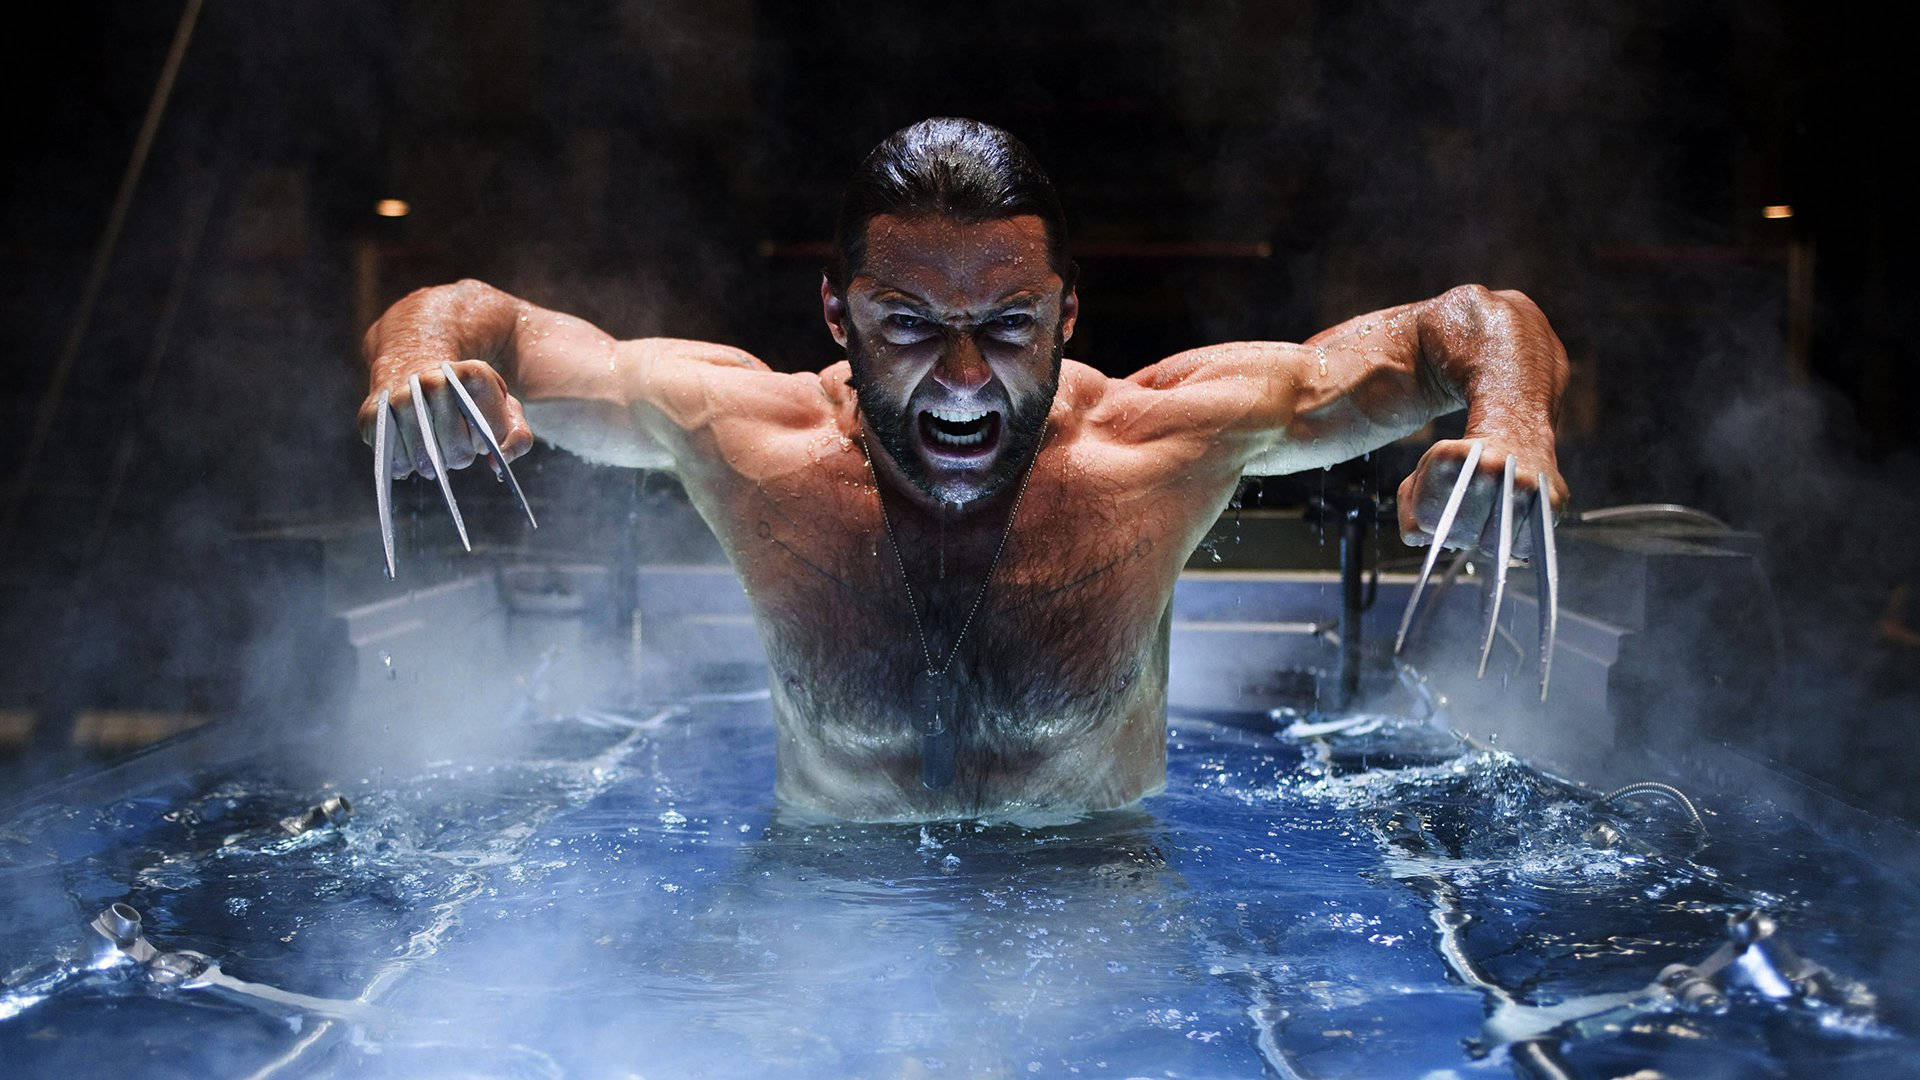 X-men Wolverine In Water Background